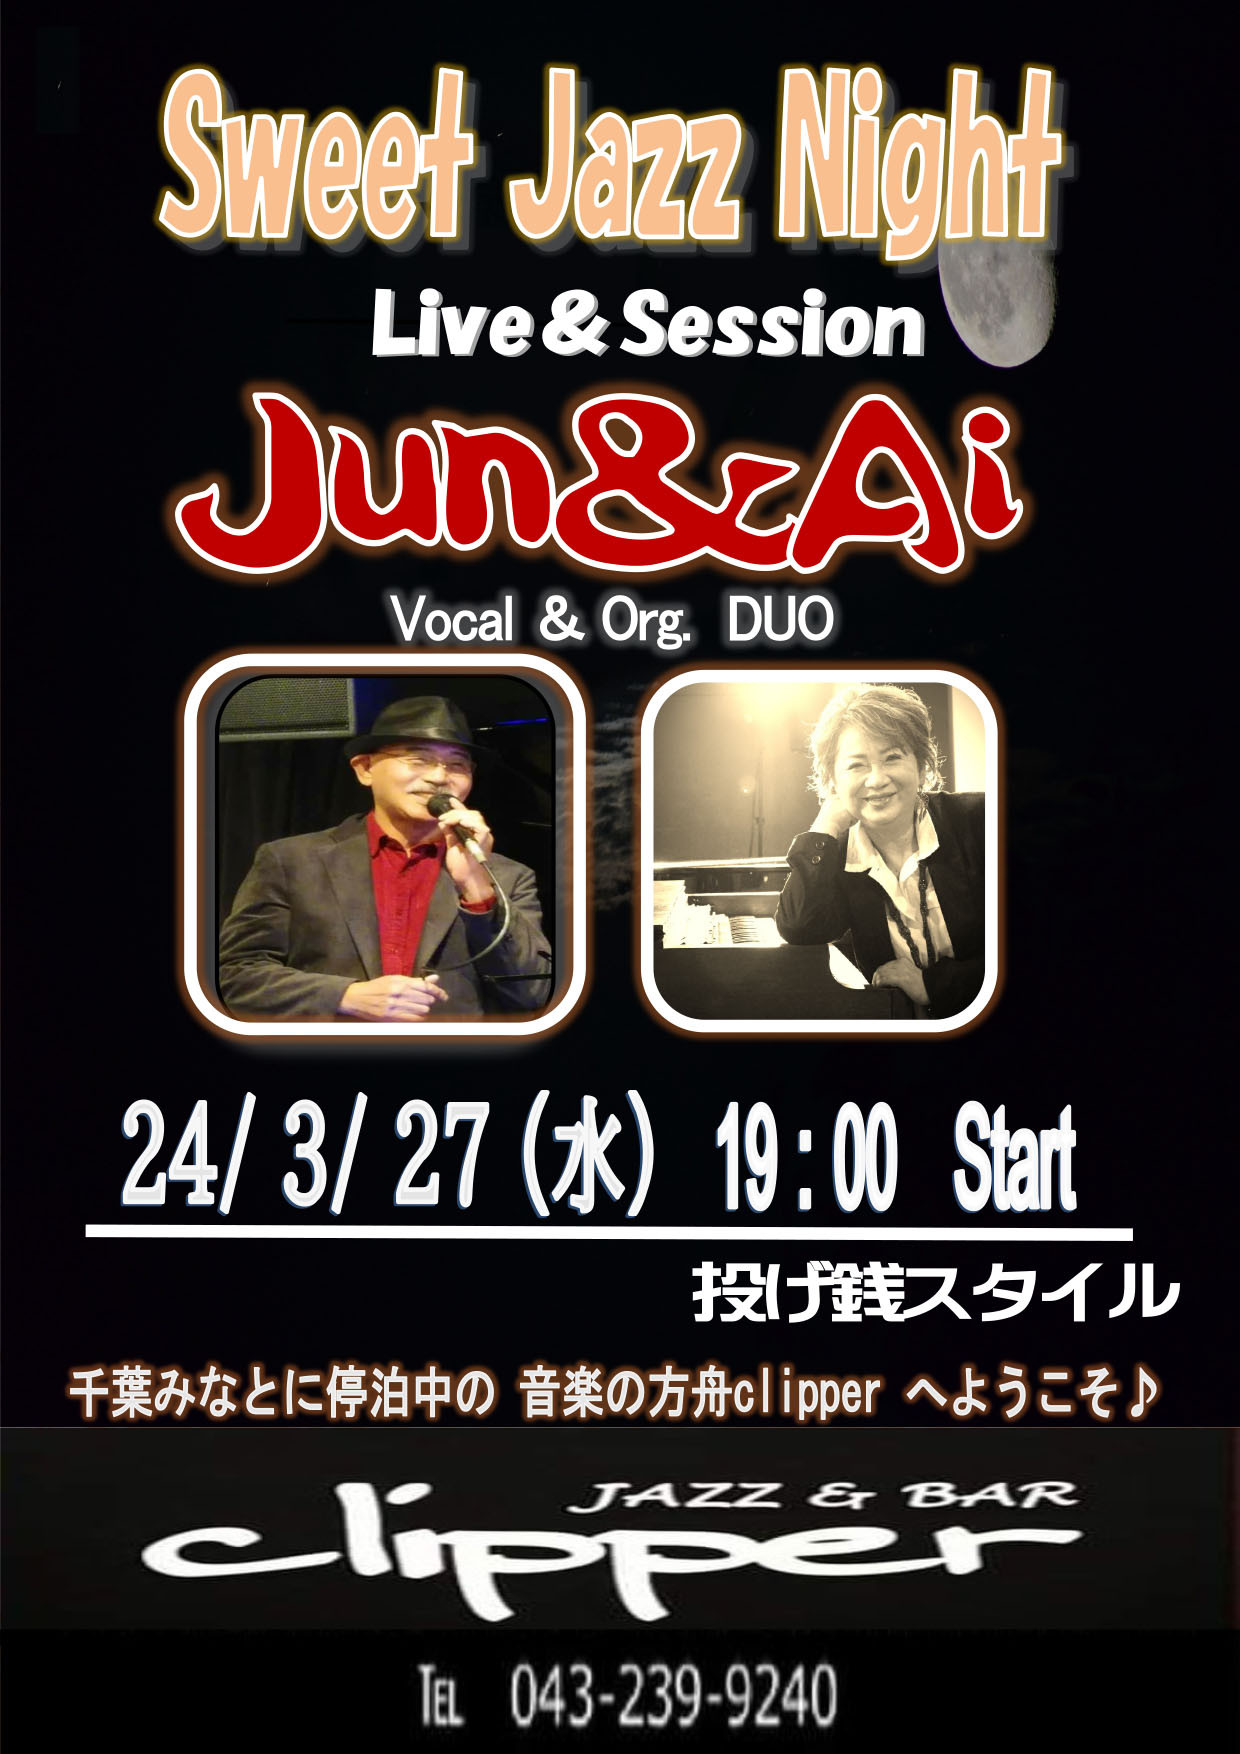 Jun & Ai Live & Session & Vocal Workshop